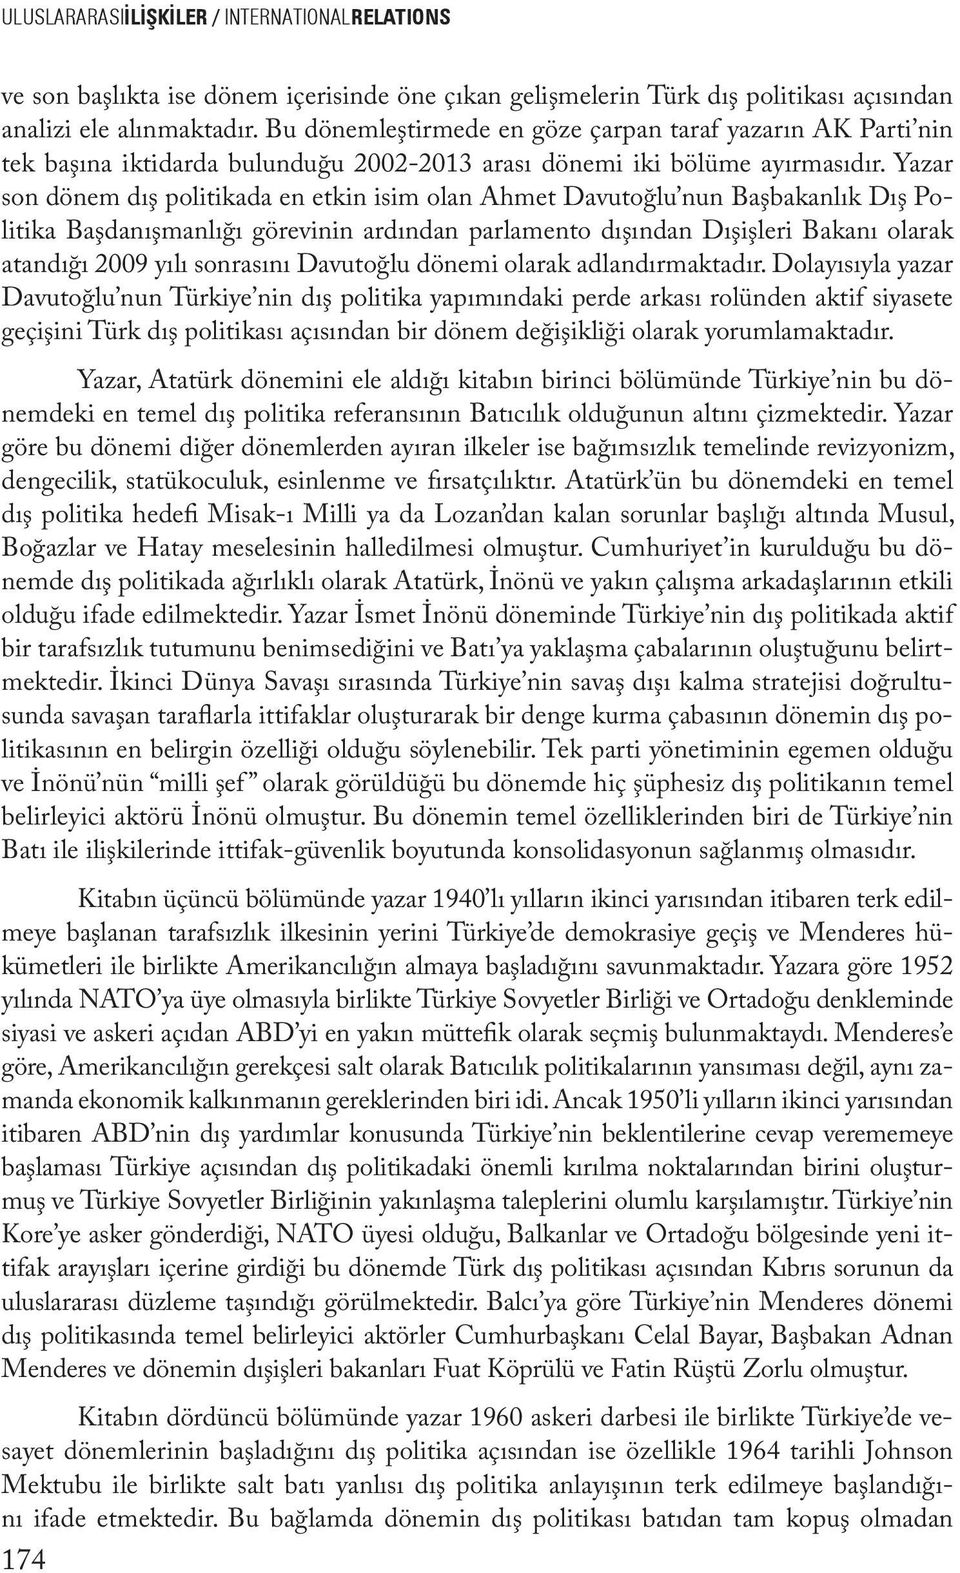 Yazar son dönem dış politikada en etkin isim olan Ahmet Davutoğlu nun Başbakanlık Dış Politika Başdanışmanlığı görevinin ardından parlamento dışından Dışişleri Bakanı olarak atandığı 2009 yılı